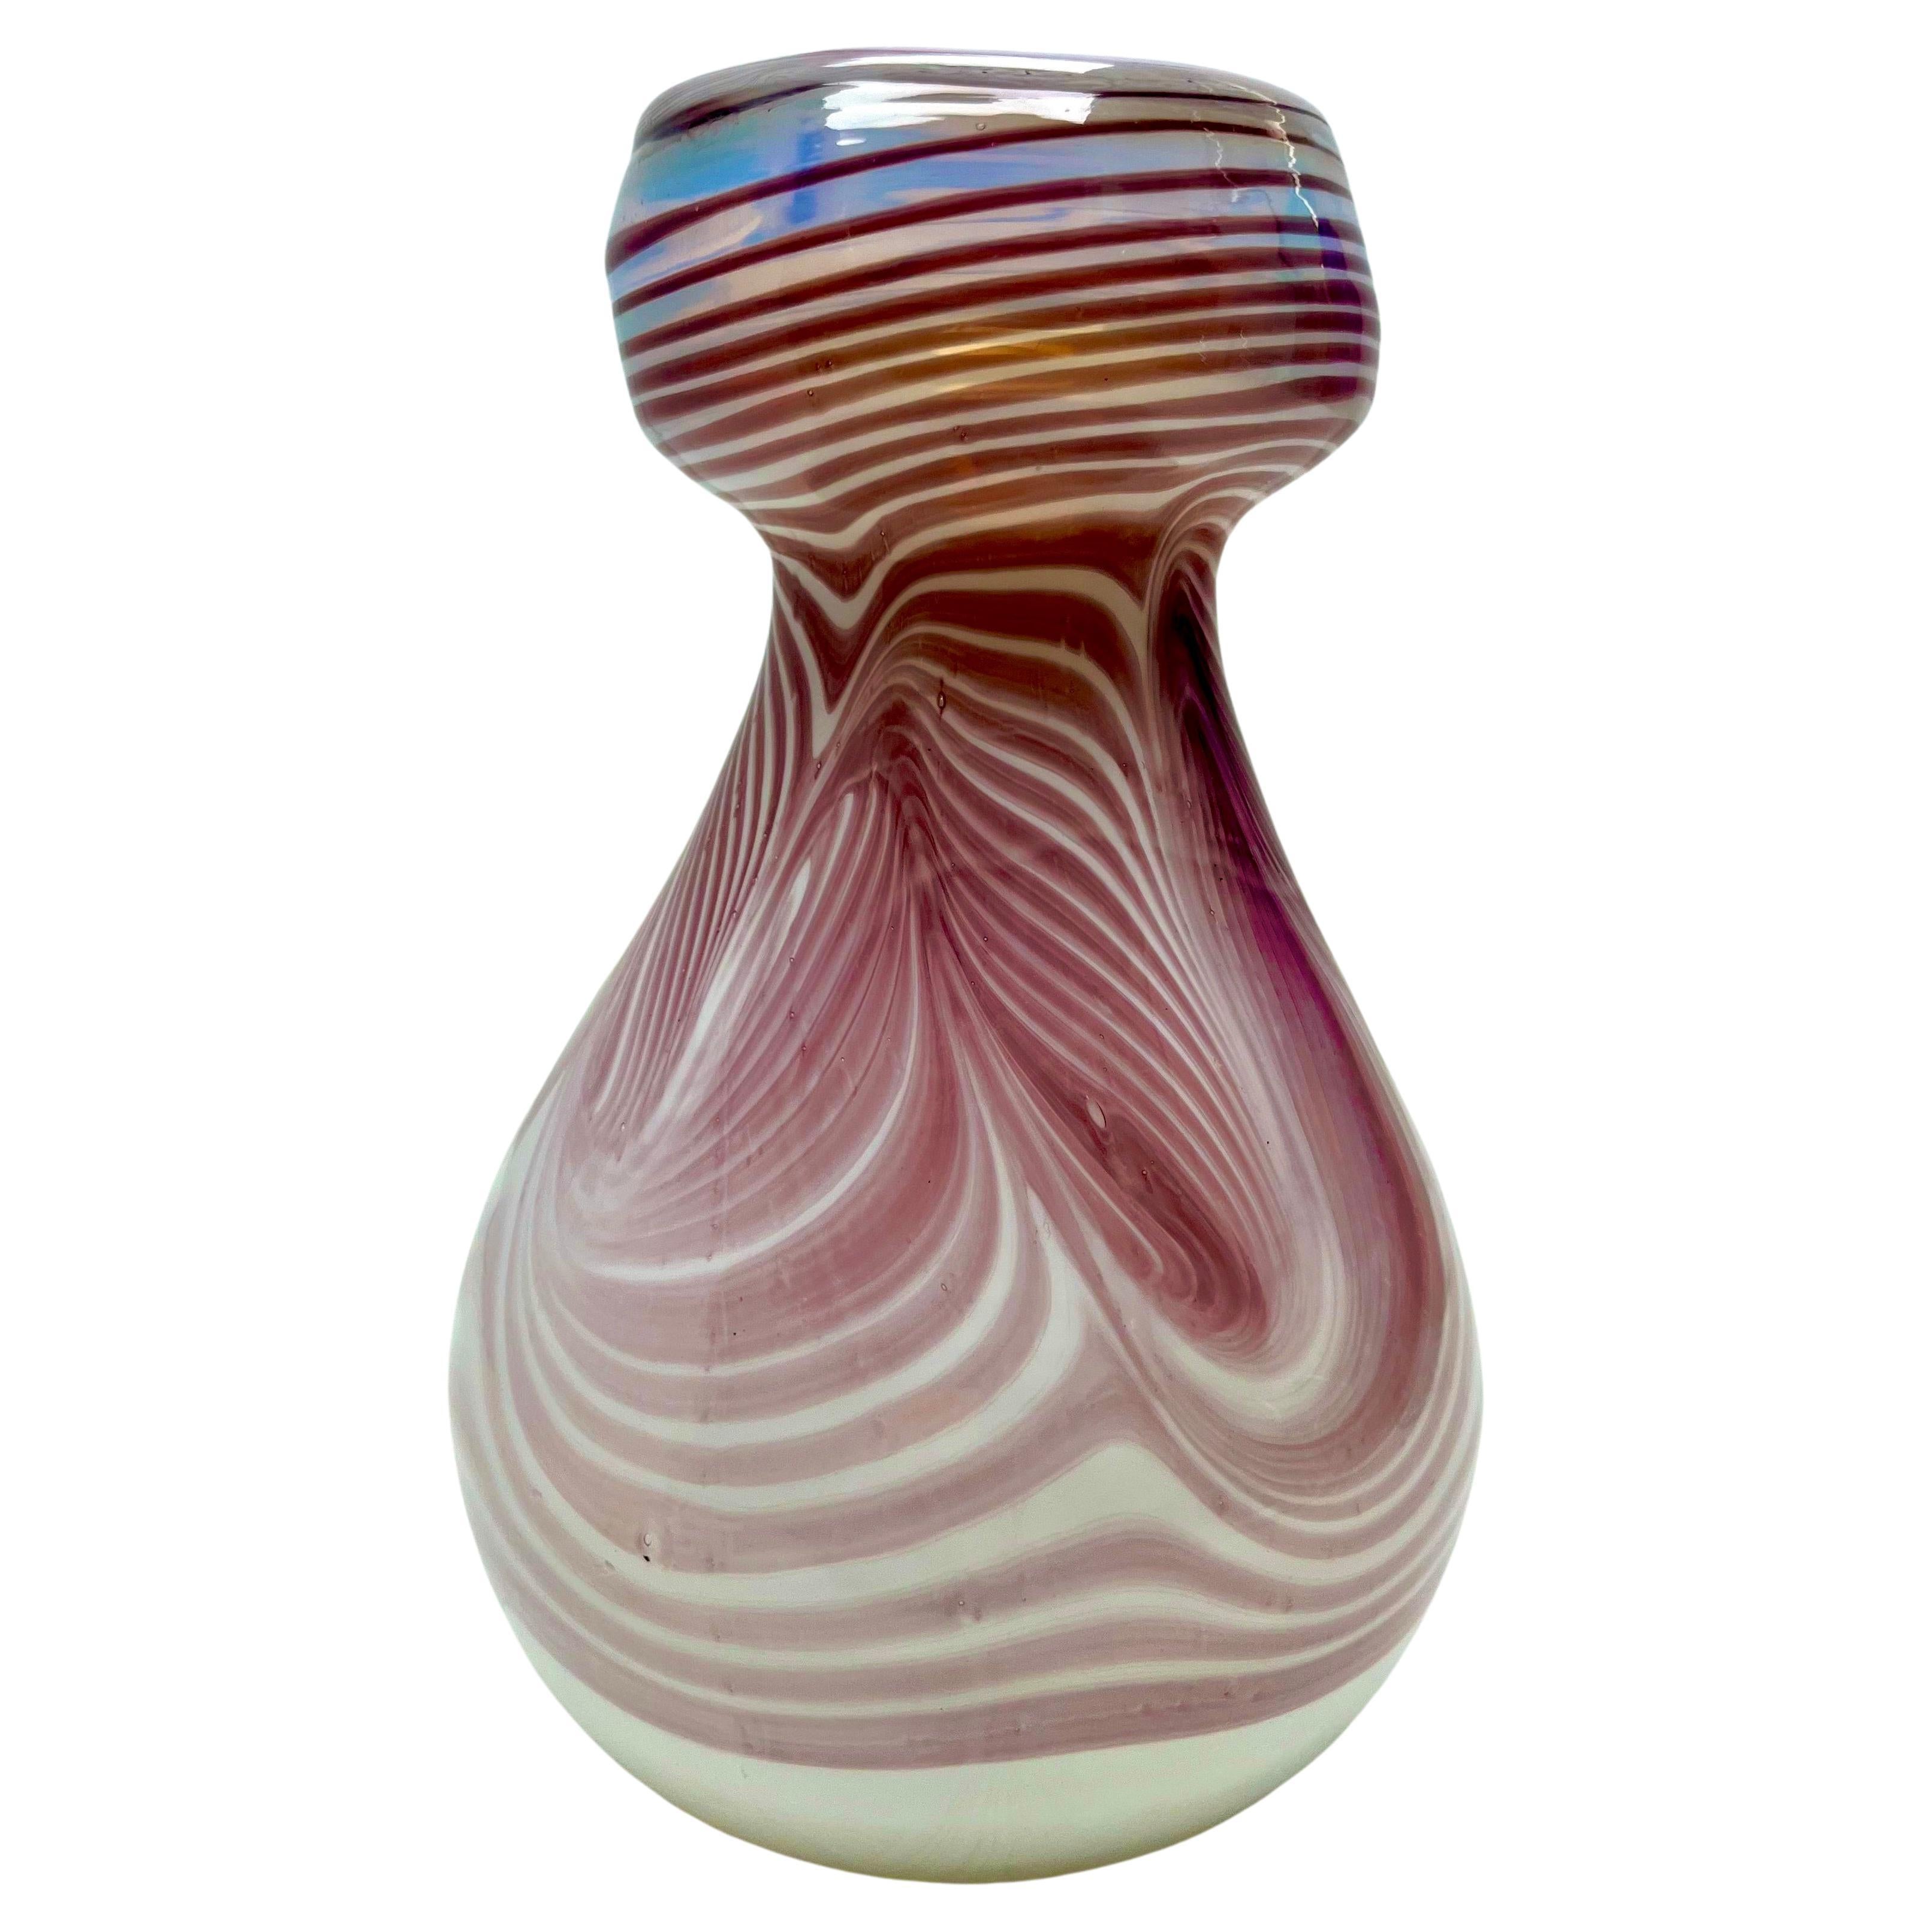 Erwin Eisch Collection, Signed Vintage vase, thick-walled, heavy - art glass

Stylish, German, hand-blown art glass vase from the Erwin Eich Collection, made in the Eisch Frauenau glassworks between 1979-1990. Erwin Eisch (German, born 1927) is